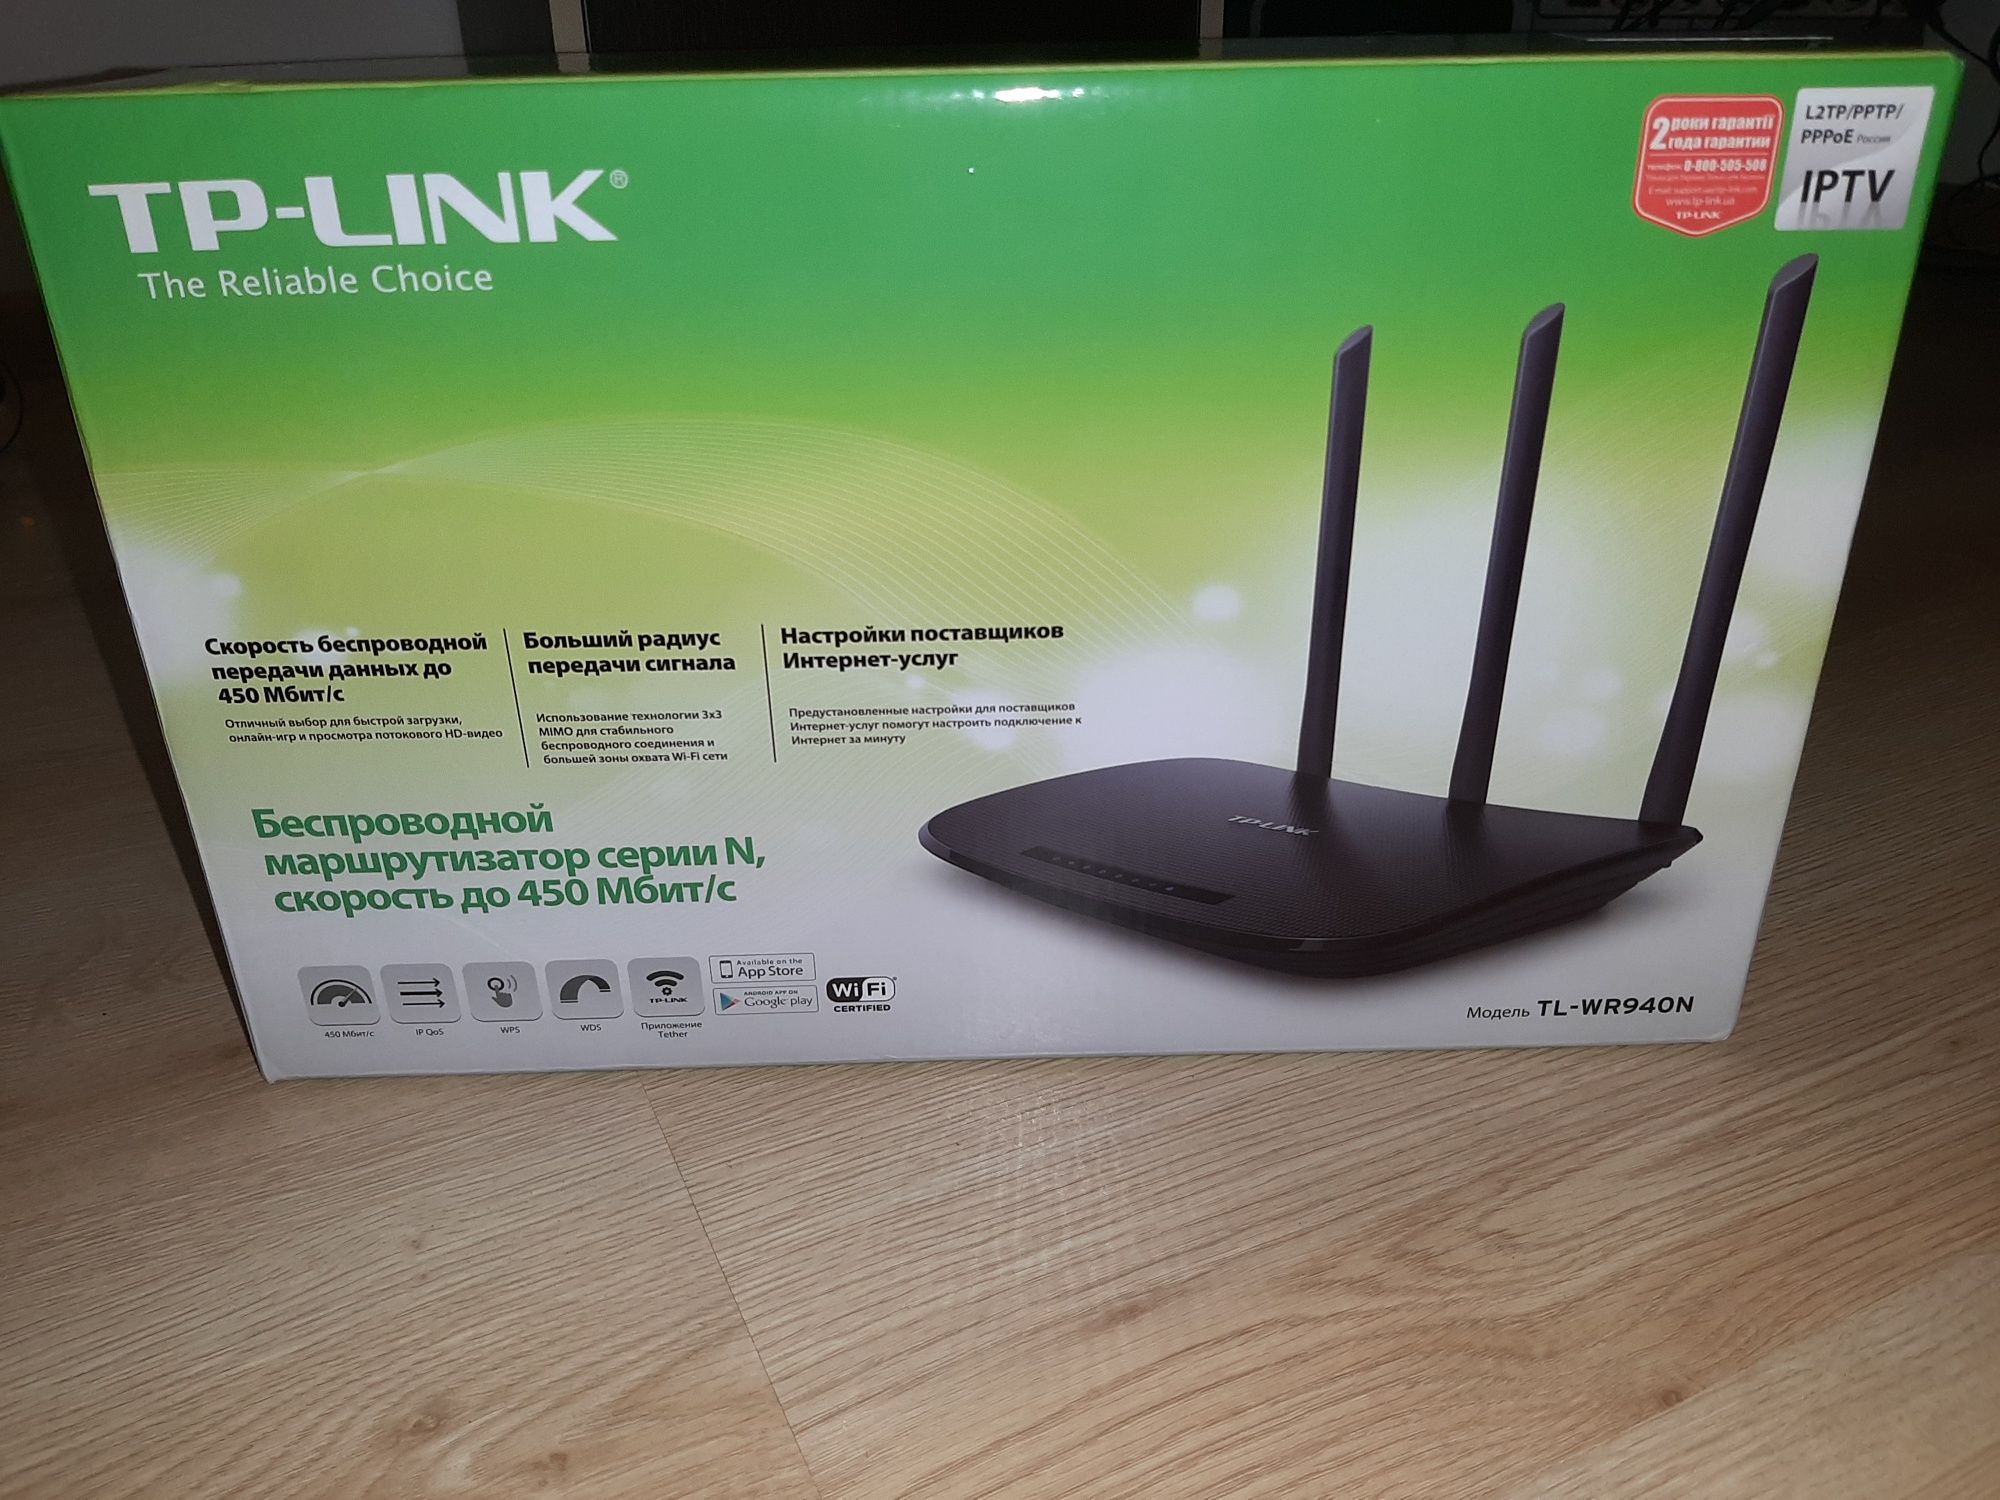 Продам Wifi Роутер TP-Link TL-WR940N